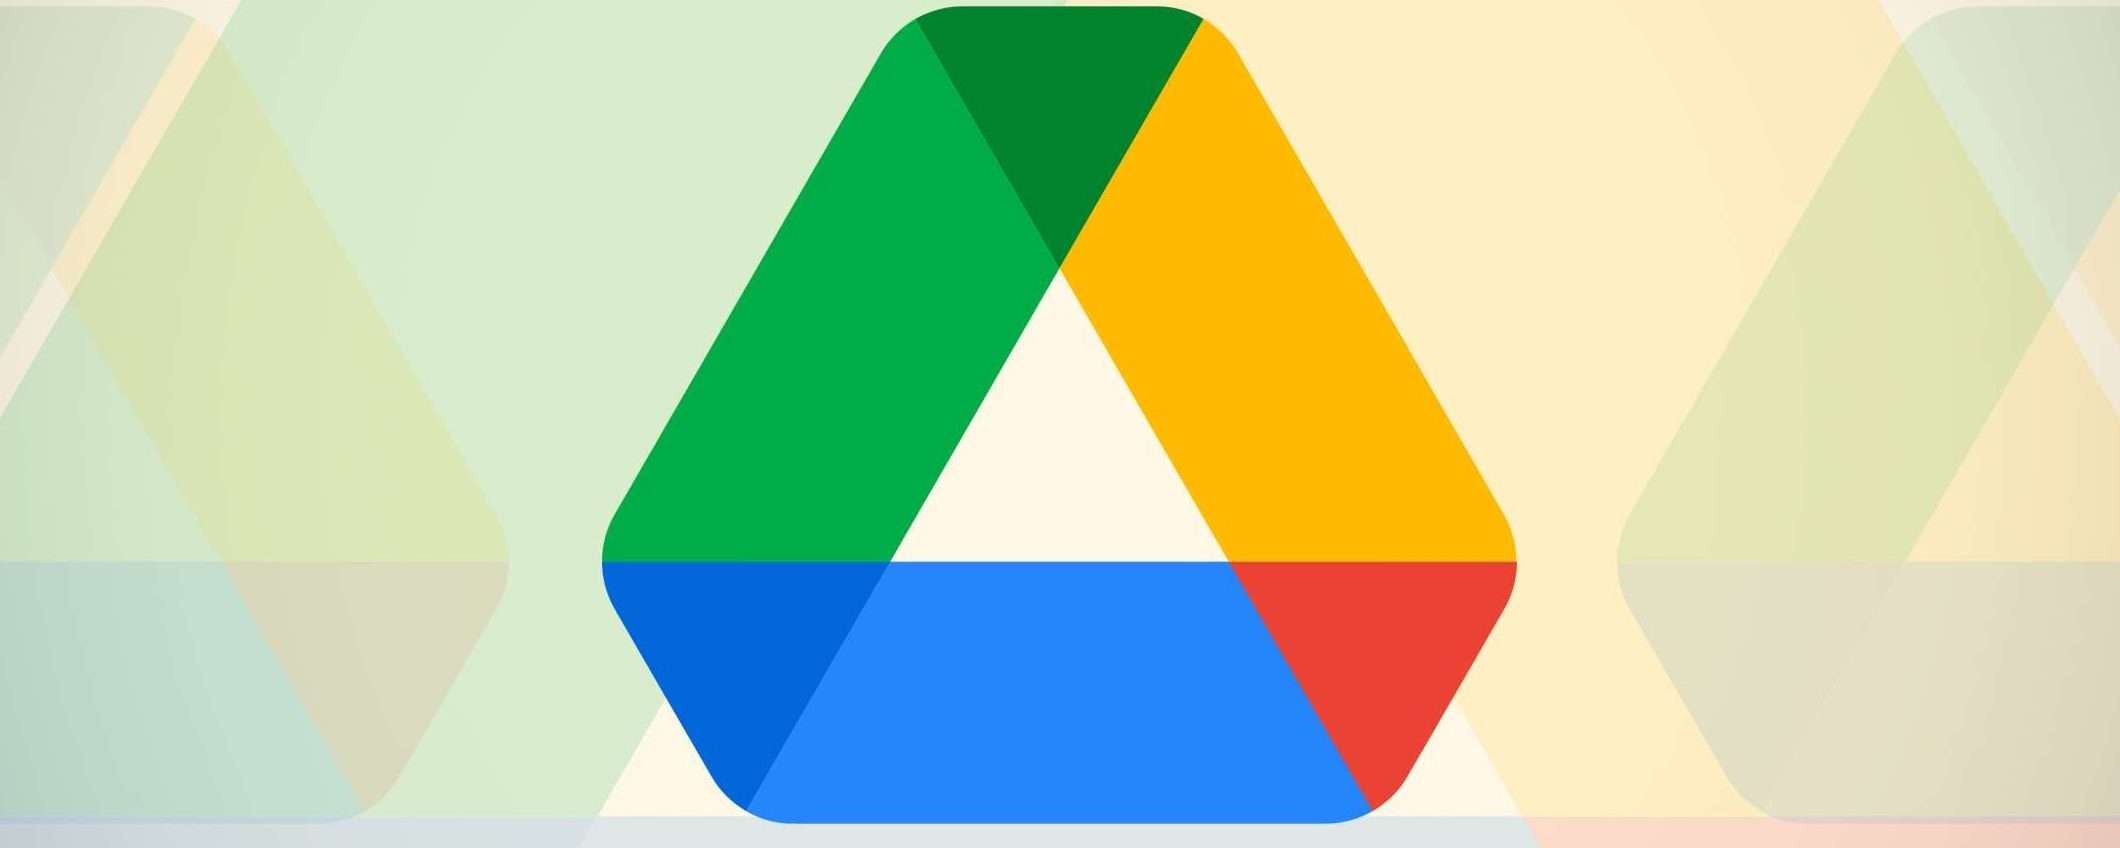 Google indaga sulla scomparsa dei file in Drive